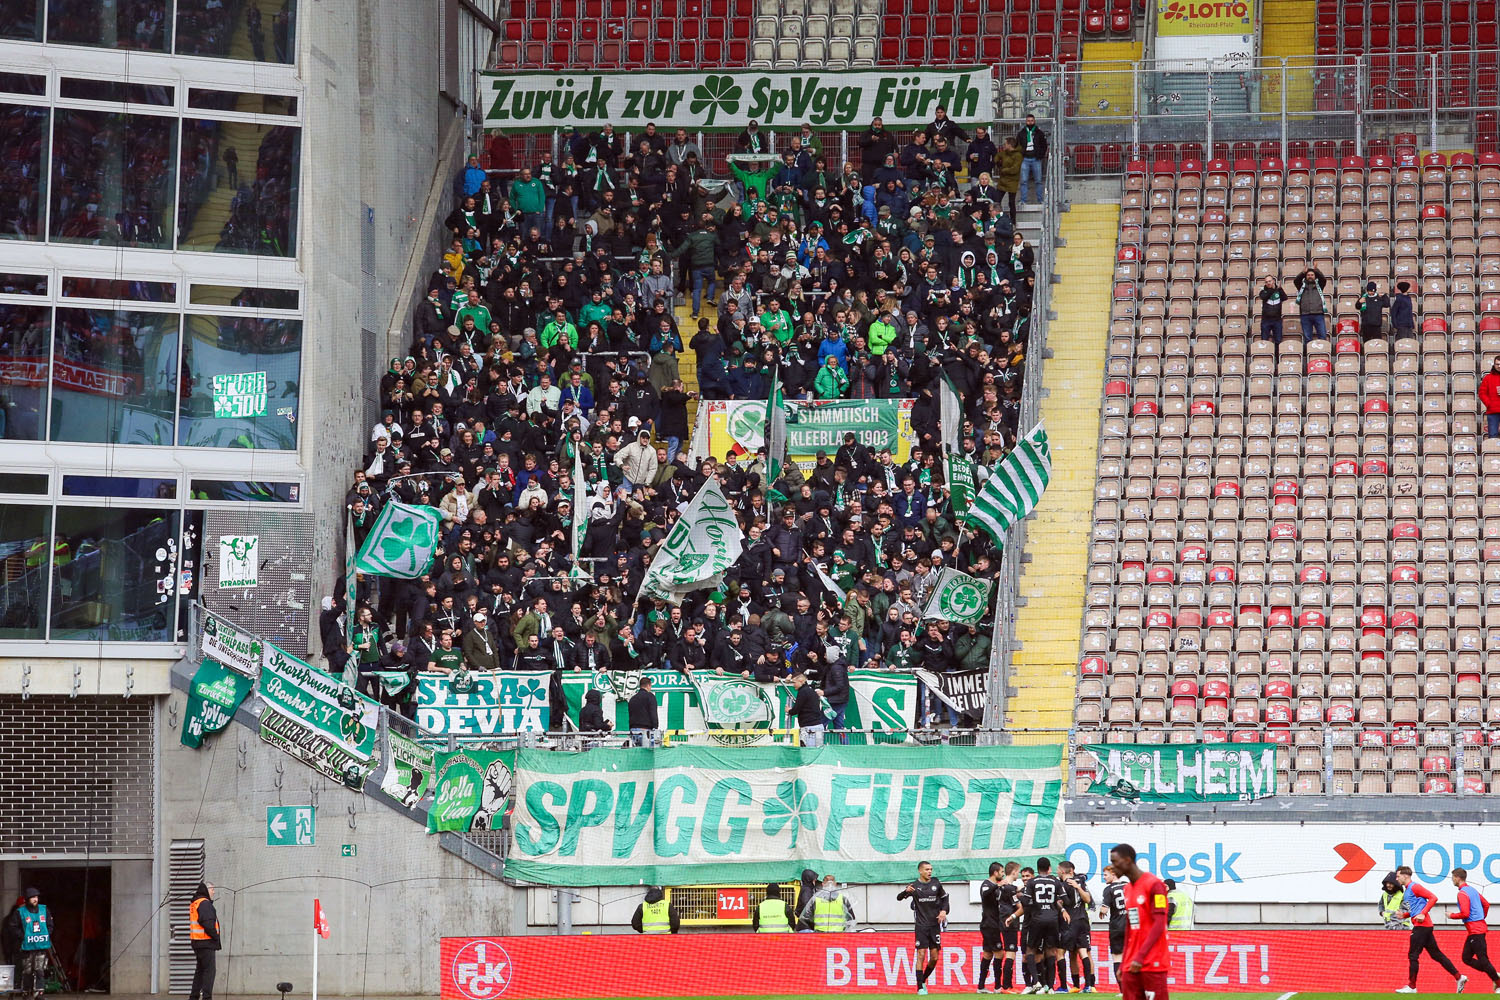 Rund 700 Fans unterstützen die SpVgg Fürth auf dem Betzenberg